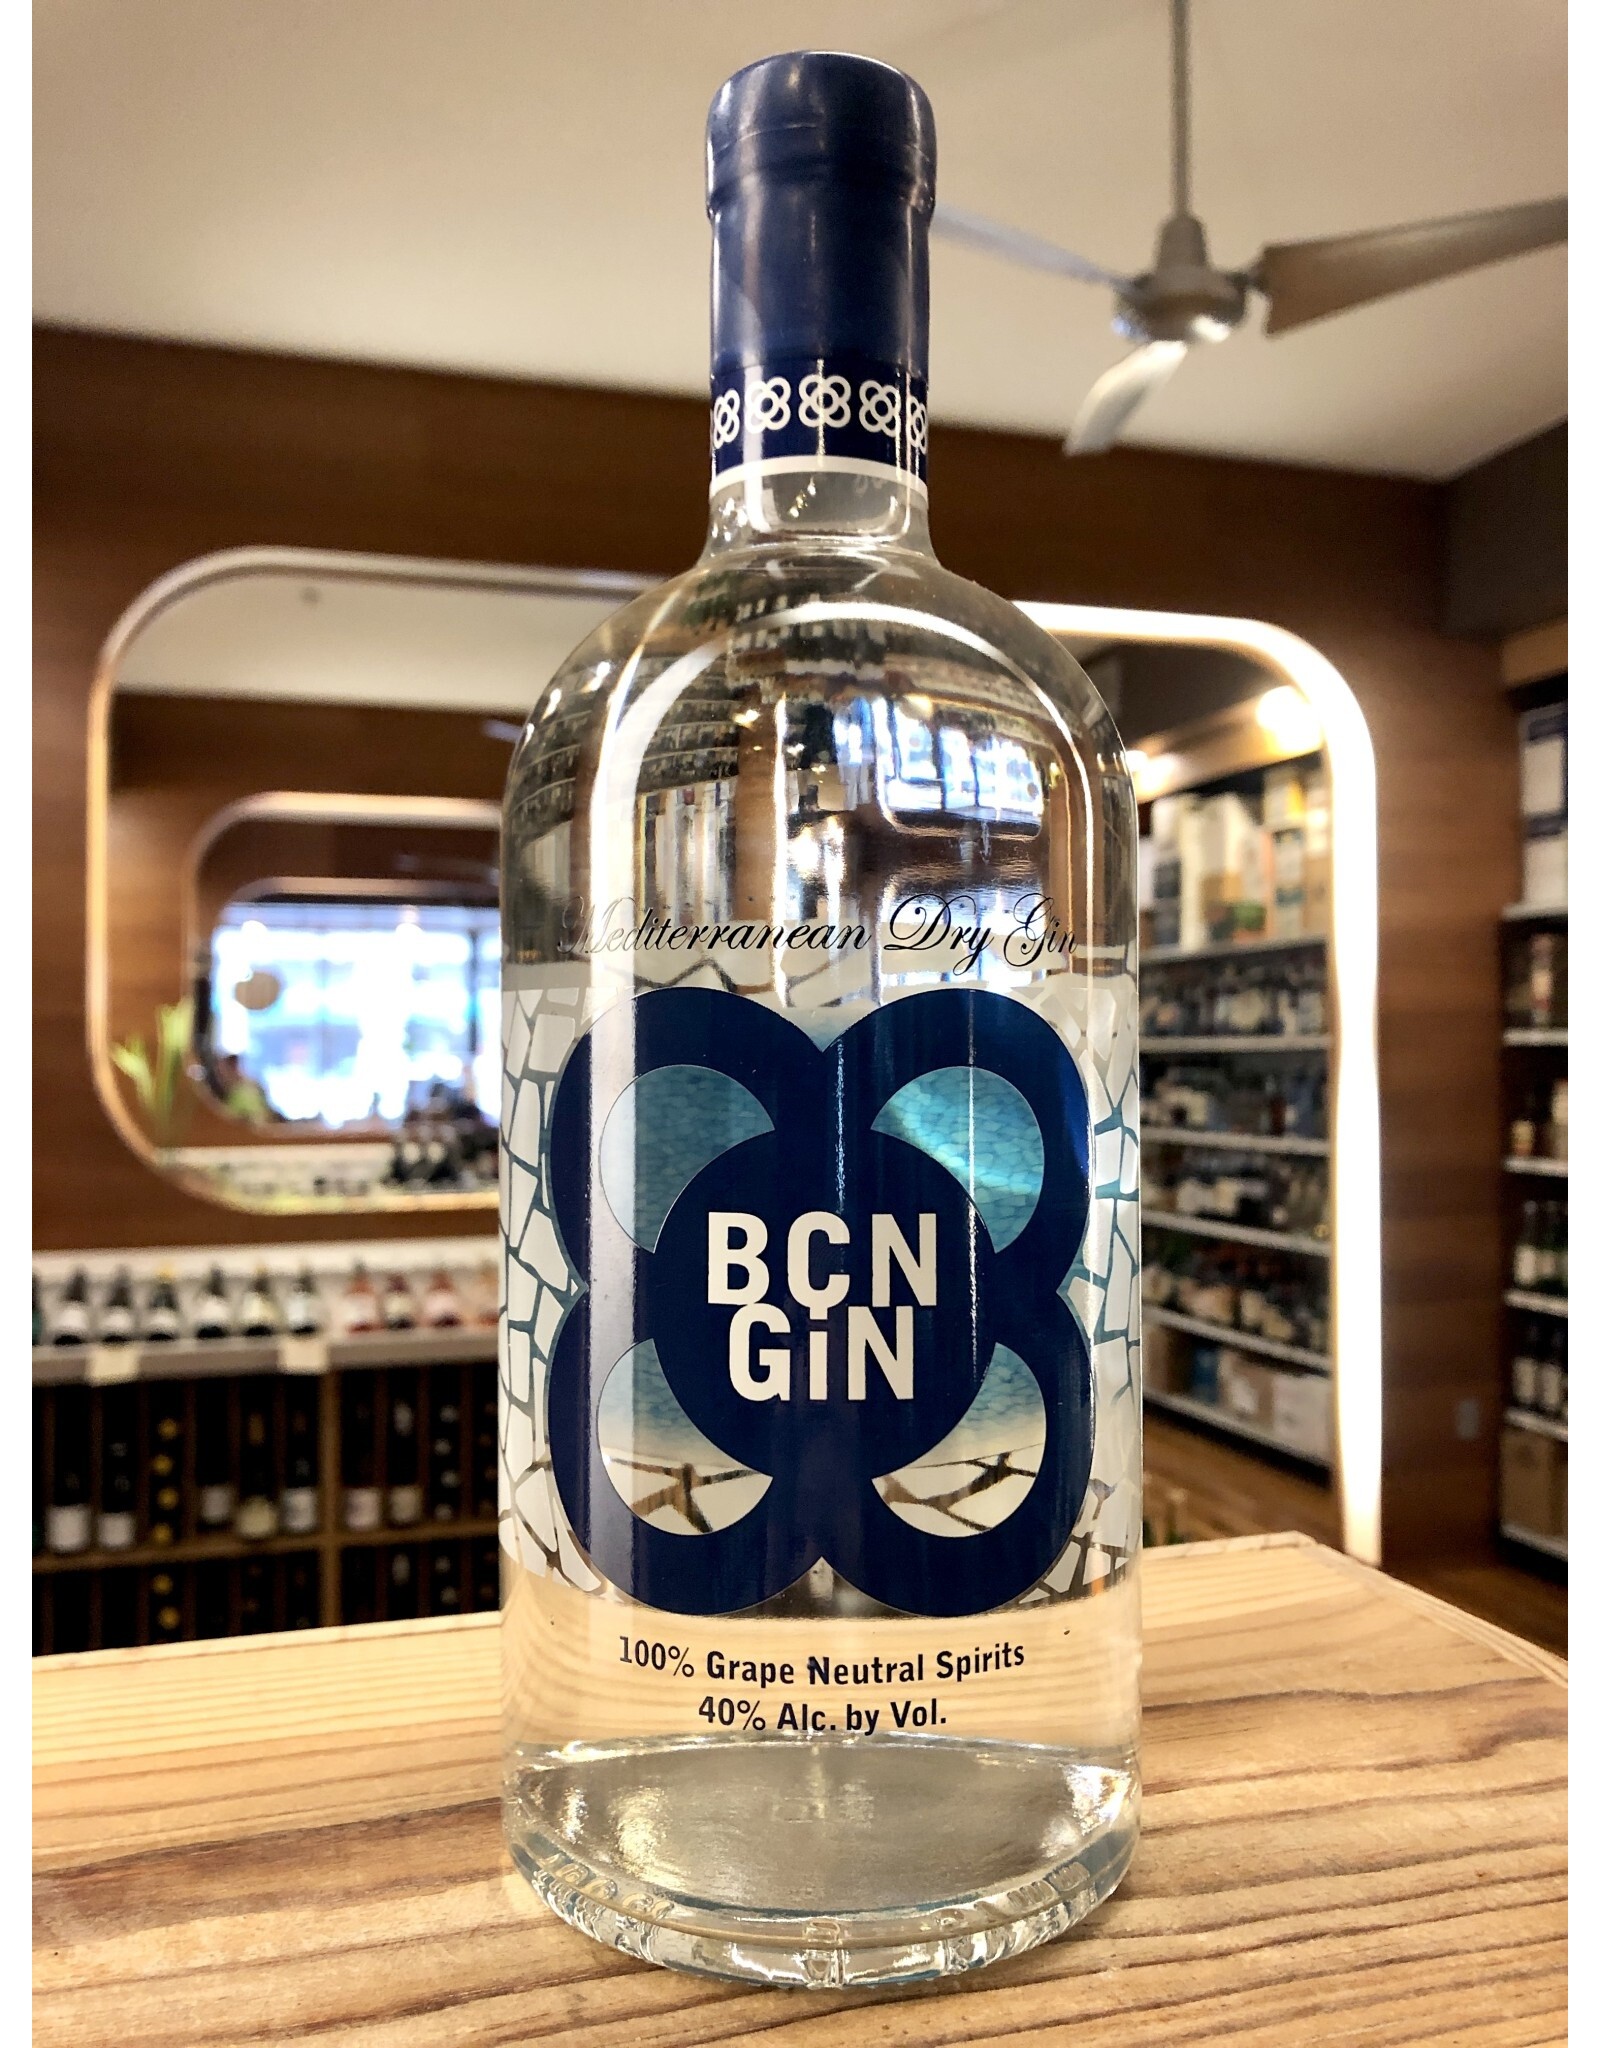 BCN Mediterranean Dry Gin - 1 Liter